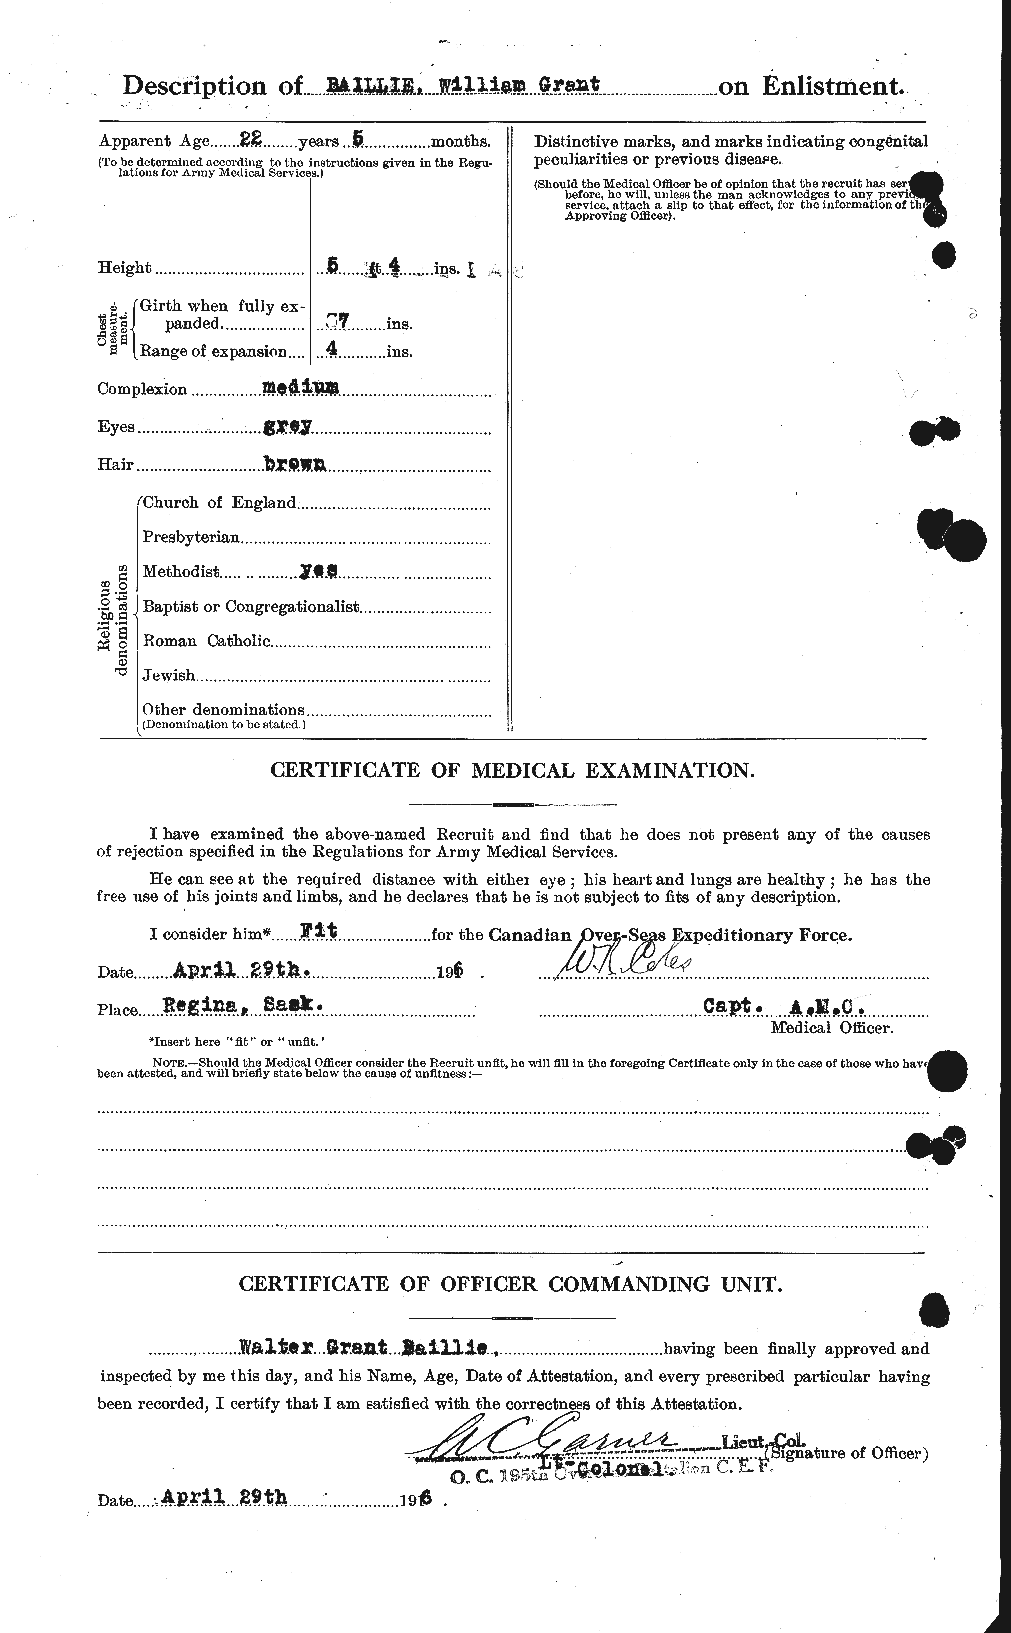 Dossiers du Personnel de la Première Guerre mondiale - CEC 226208b